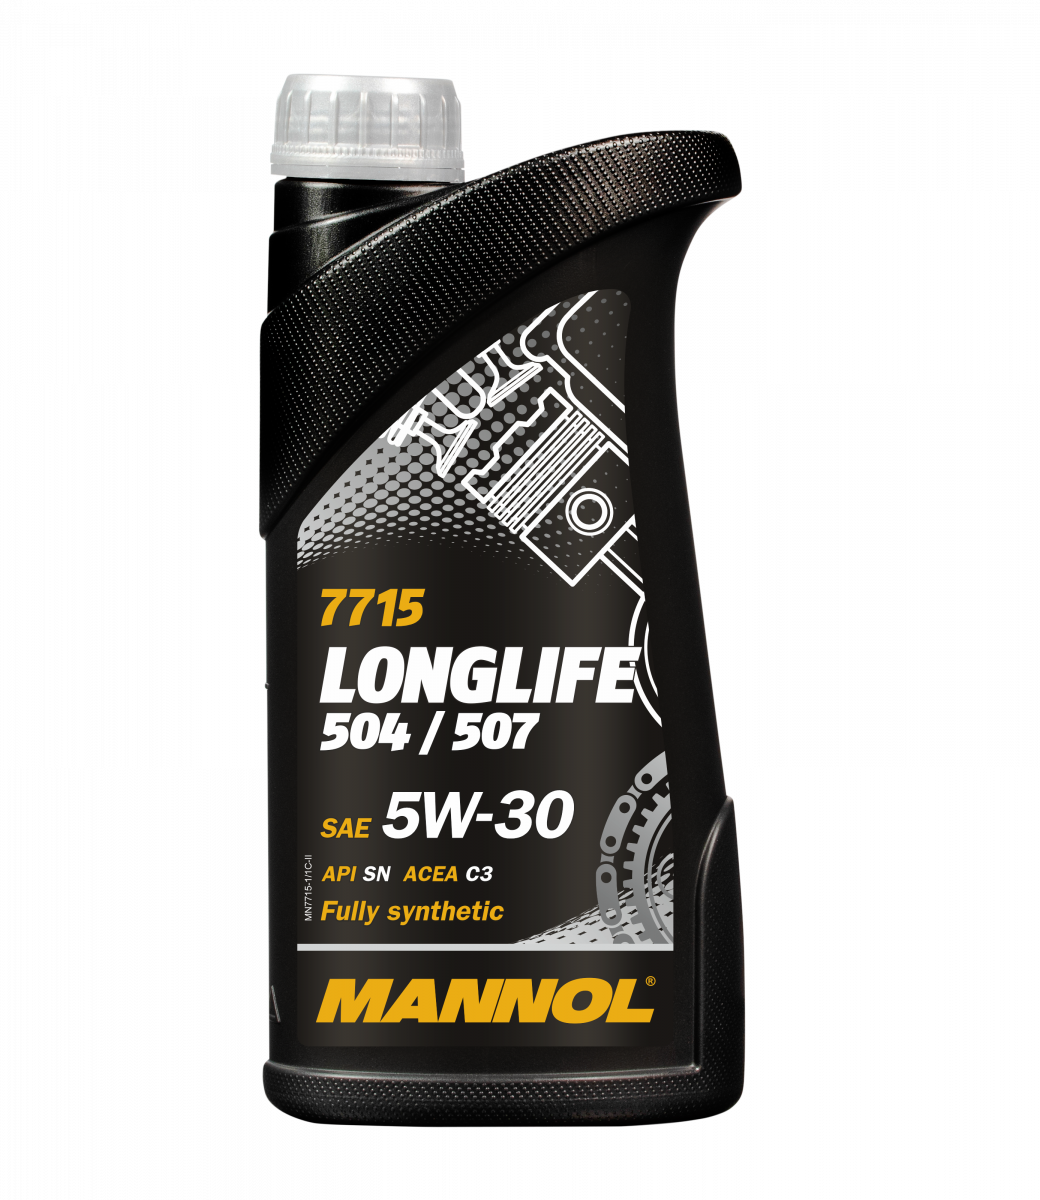 Mannol - 7715 Longlife 504/507 5W-30 1L Engine Oil